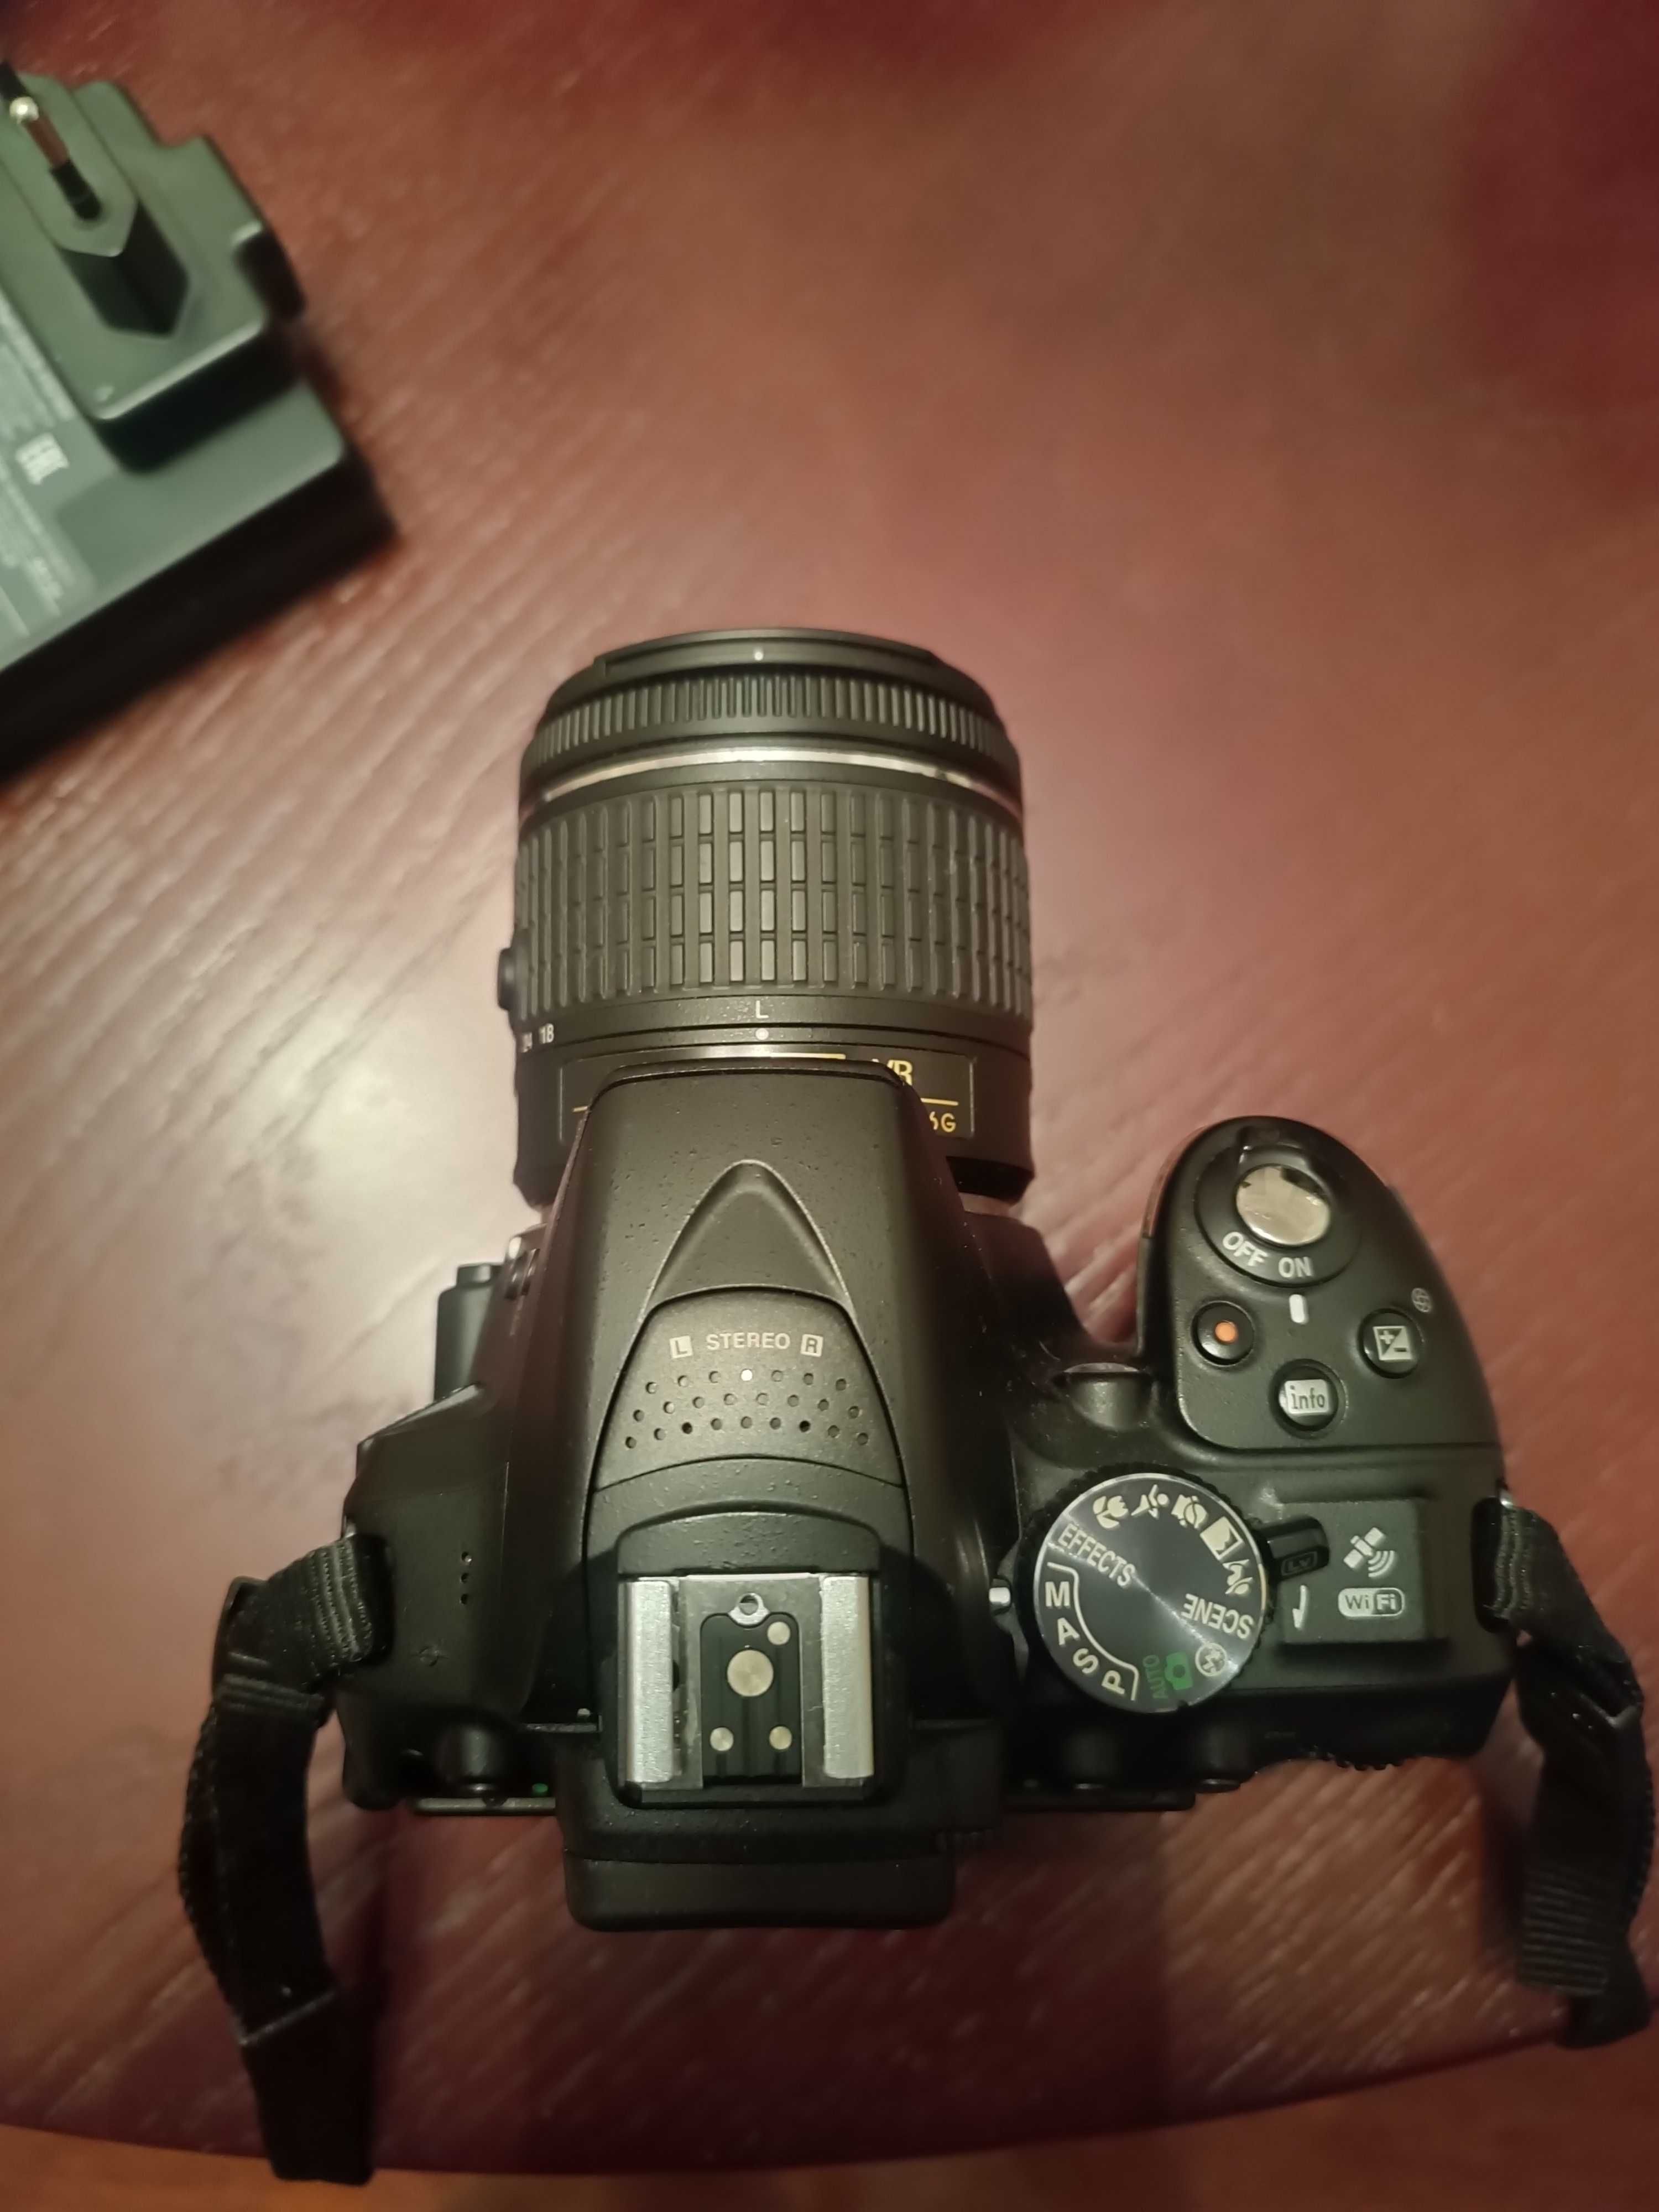 Nikon D 5300 lustrzanka